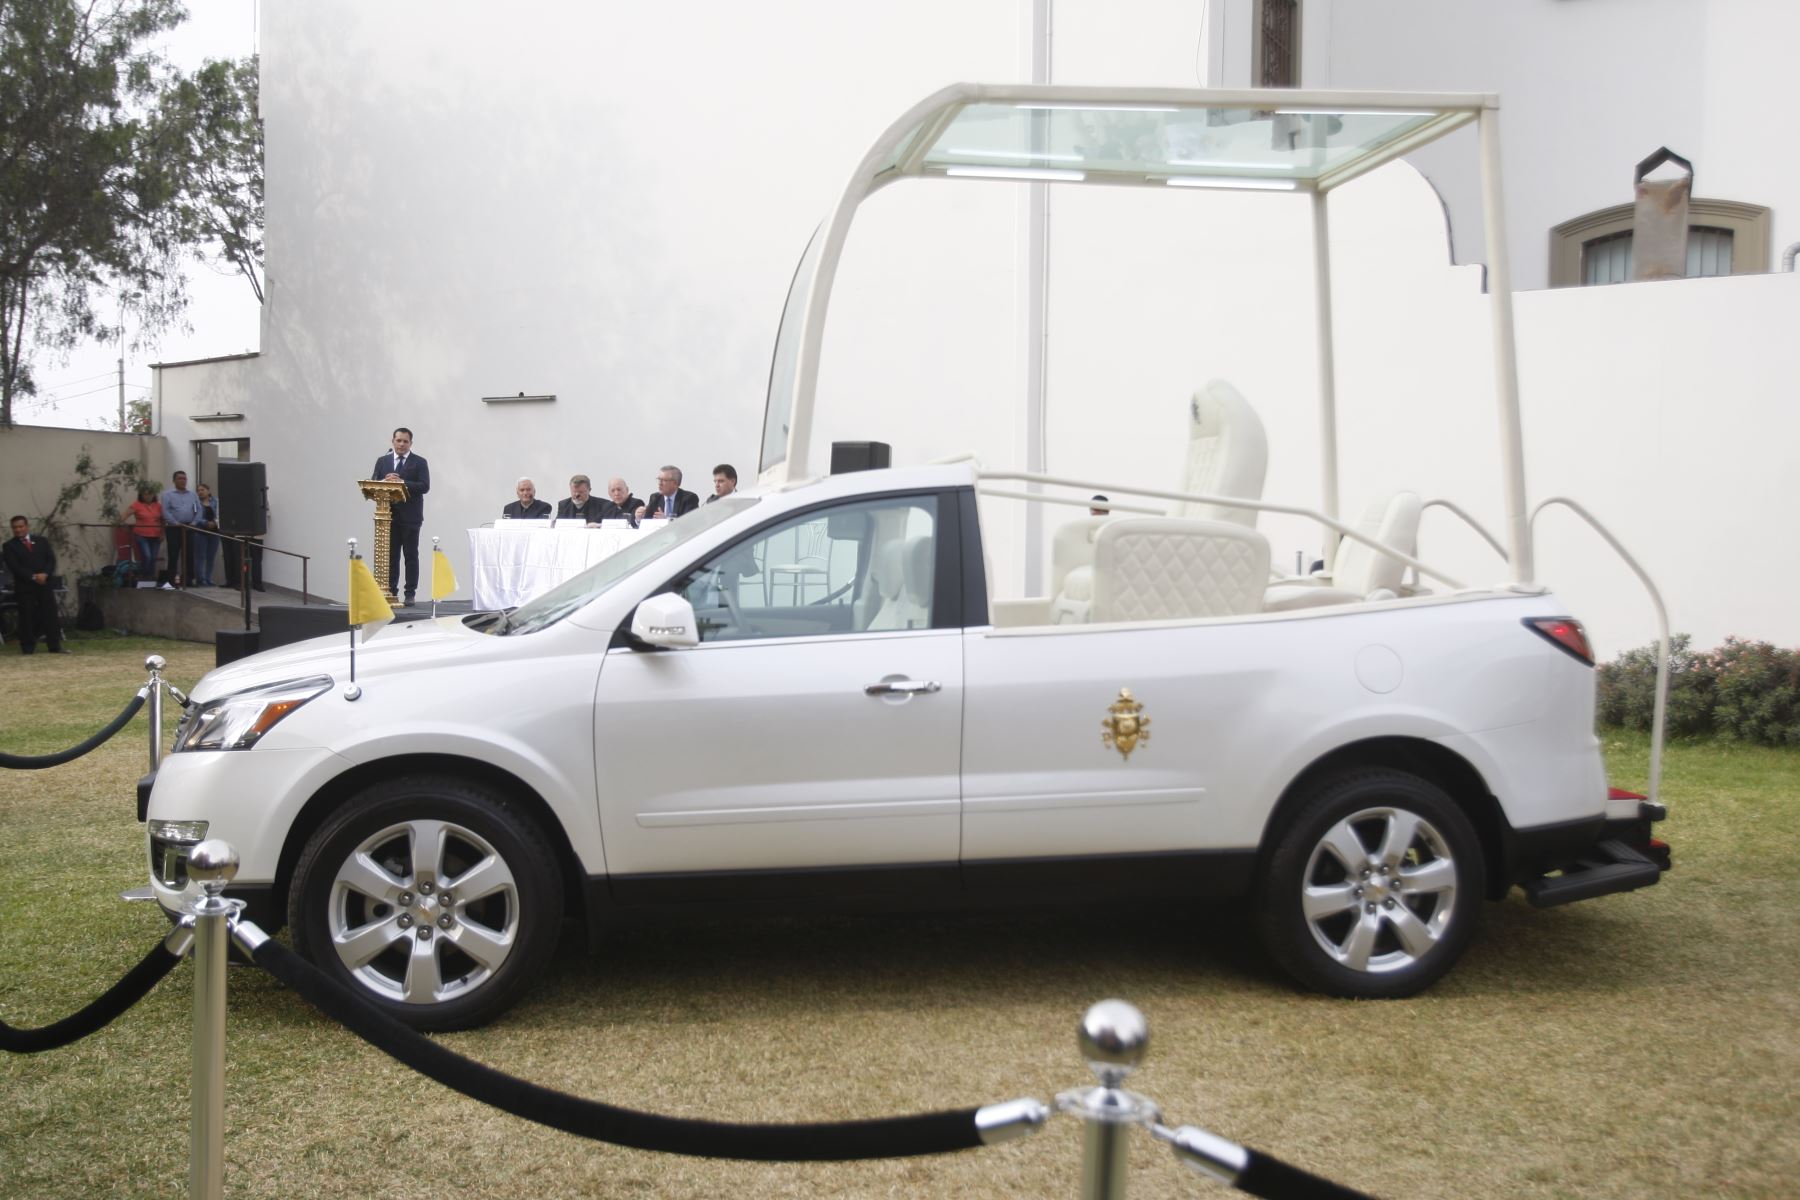 Los autos a usarse en Perú tienen la cúpula de cristal removible y modular. Foto: ANDINA/Eddy Ramos.